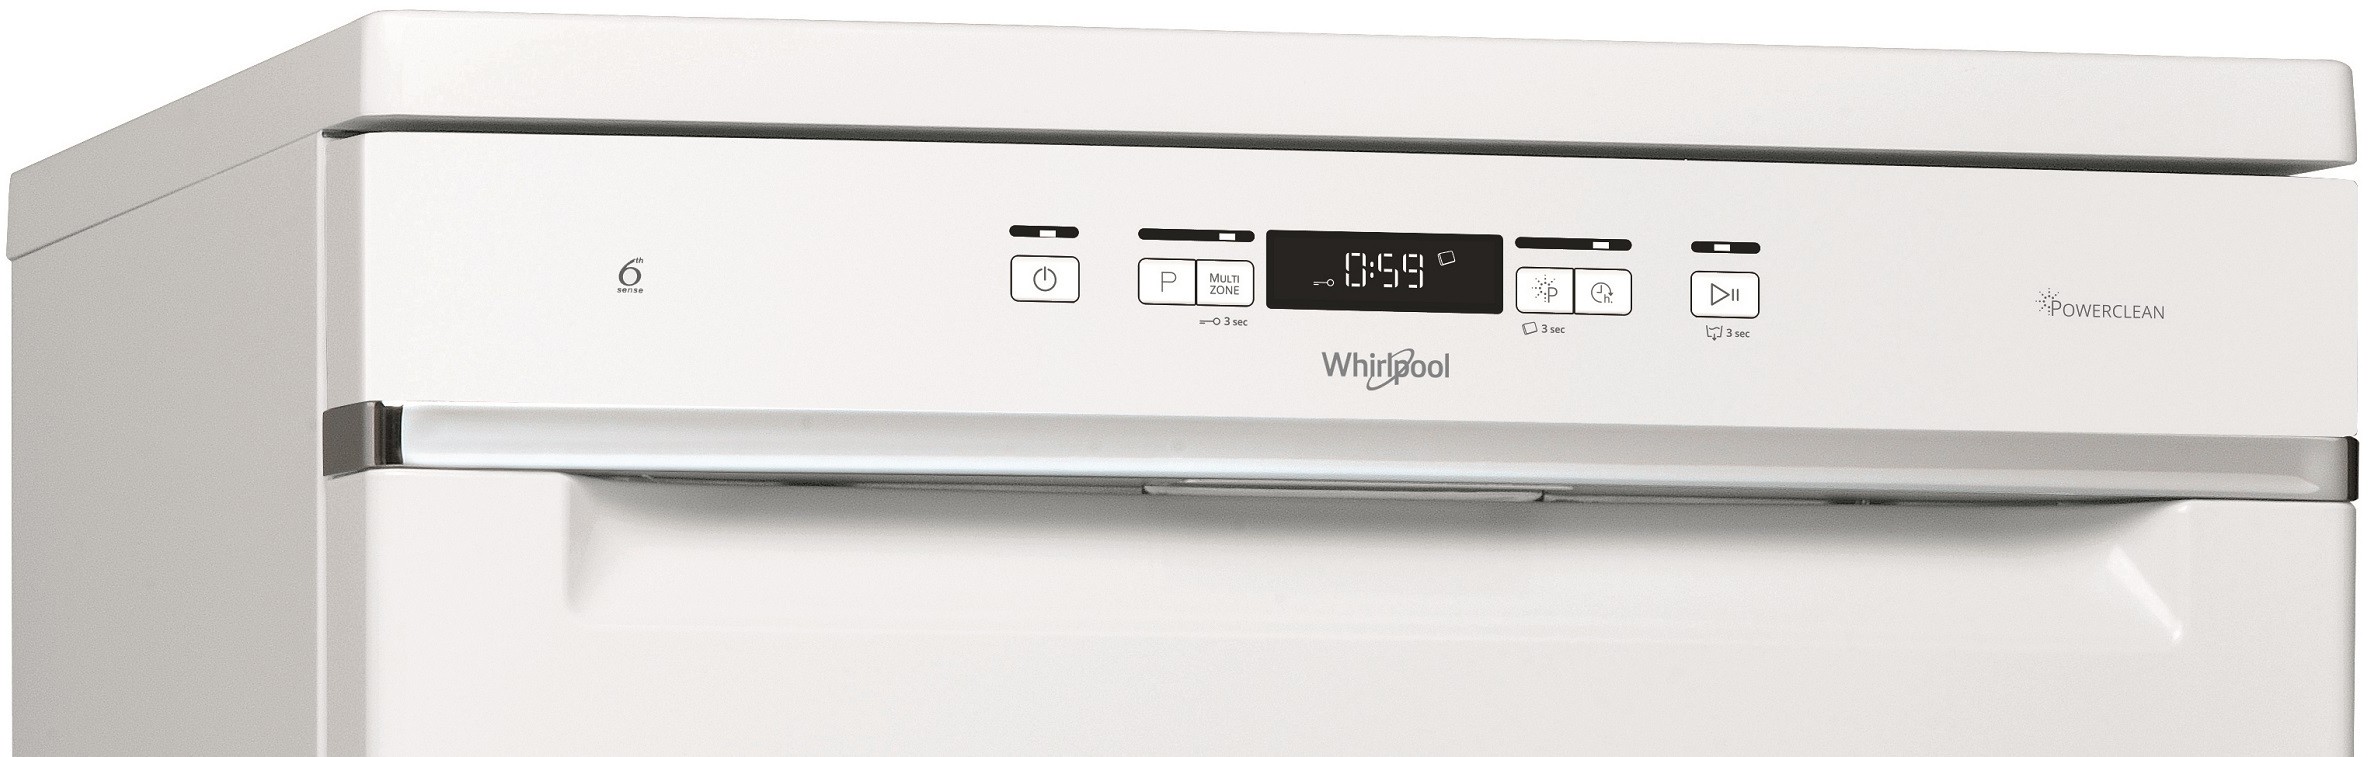 WHIRLPOOL Lave vaisselle 60 cm 6ème sens PowerClean Pro 42dB 14 couverts - WFC3C42P